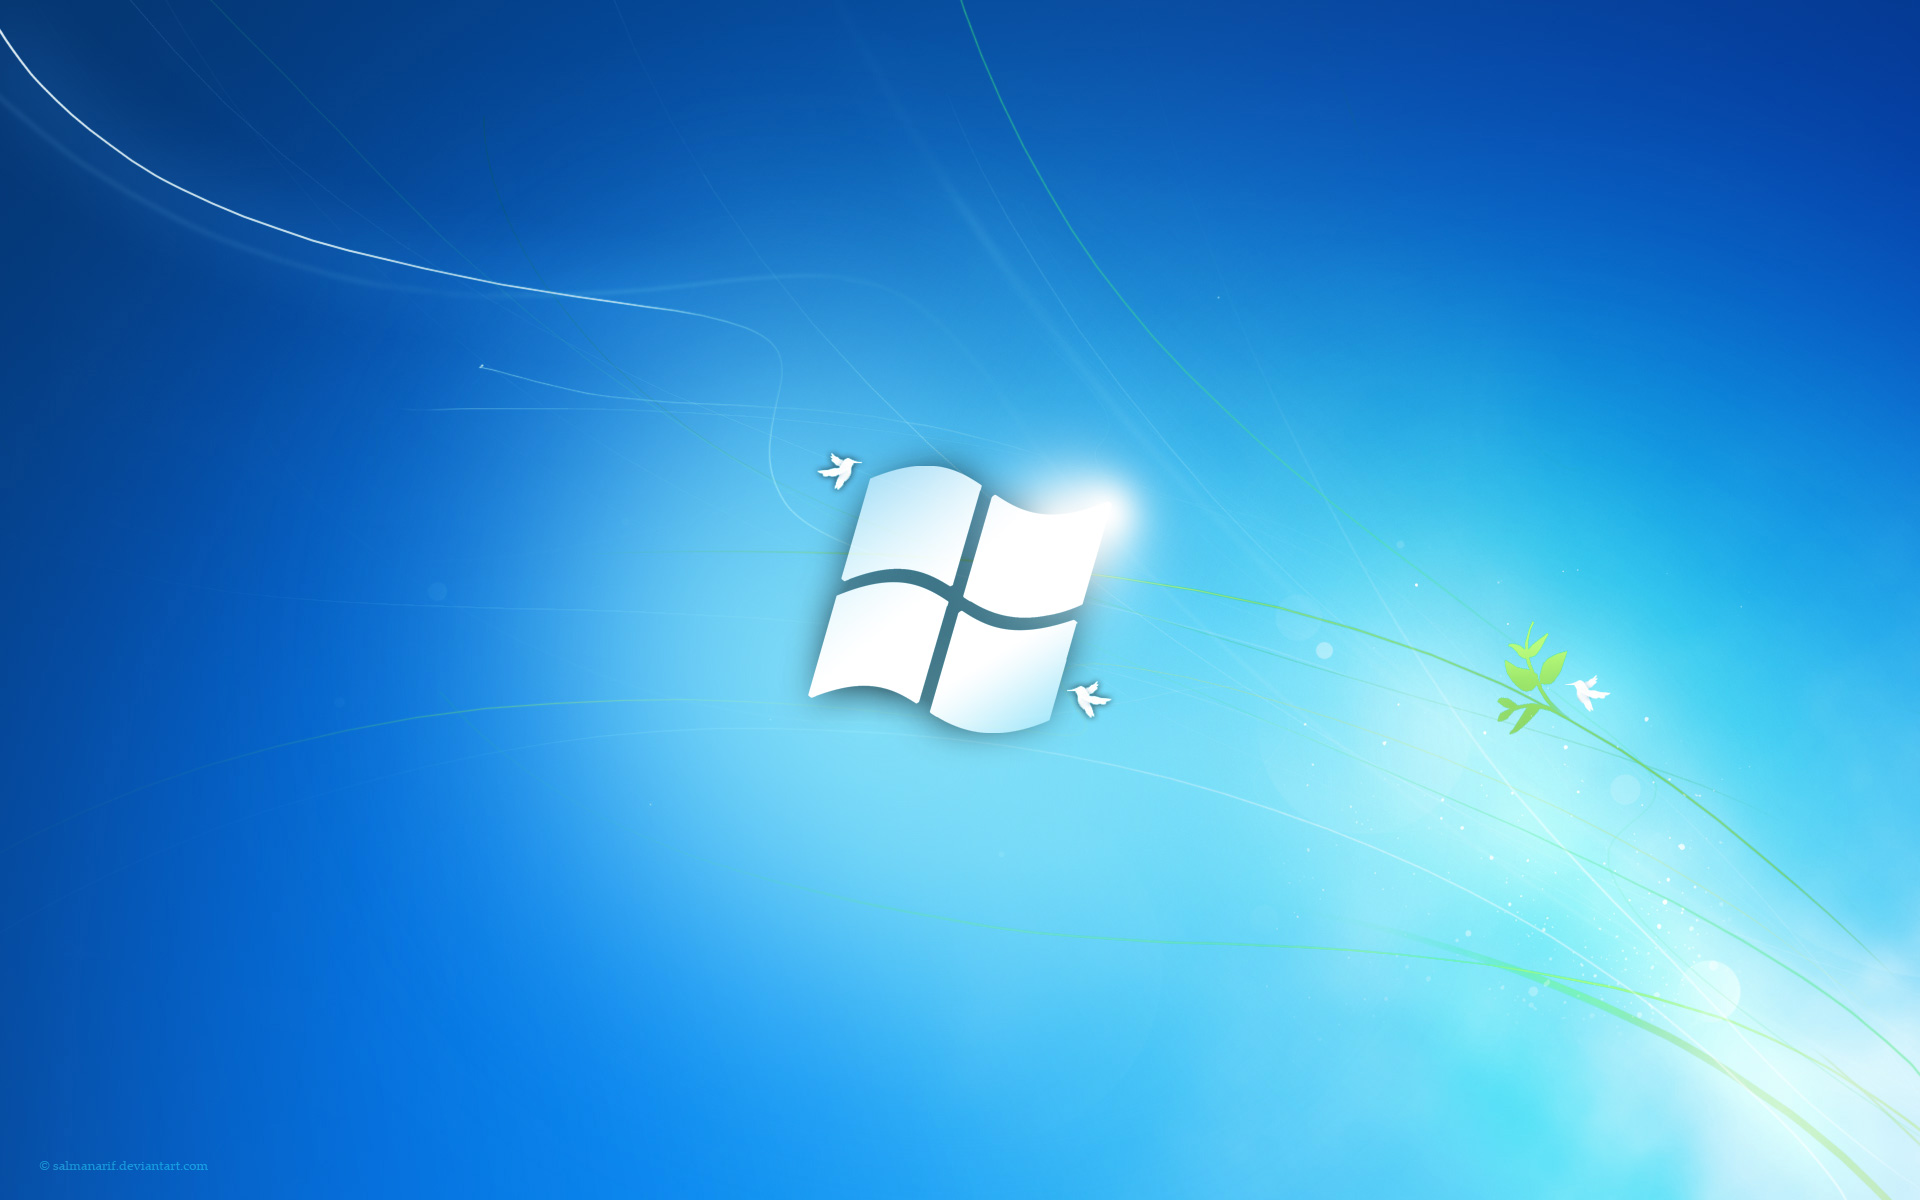 Windows 7 Flag205237031 - Windows 7 Flag - Windows, Flag